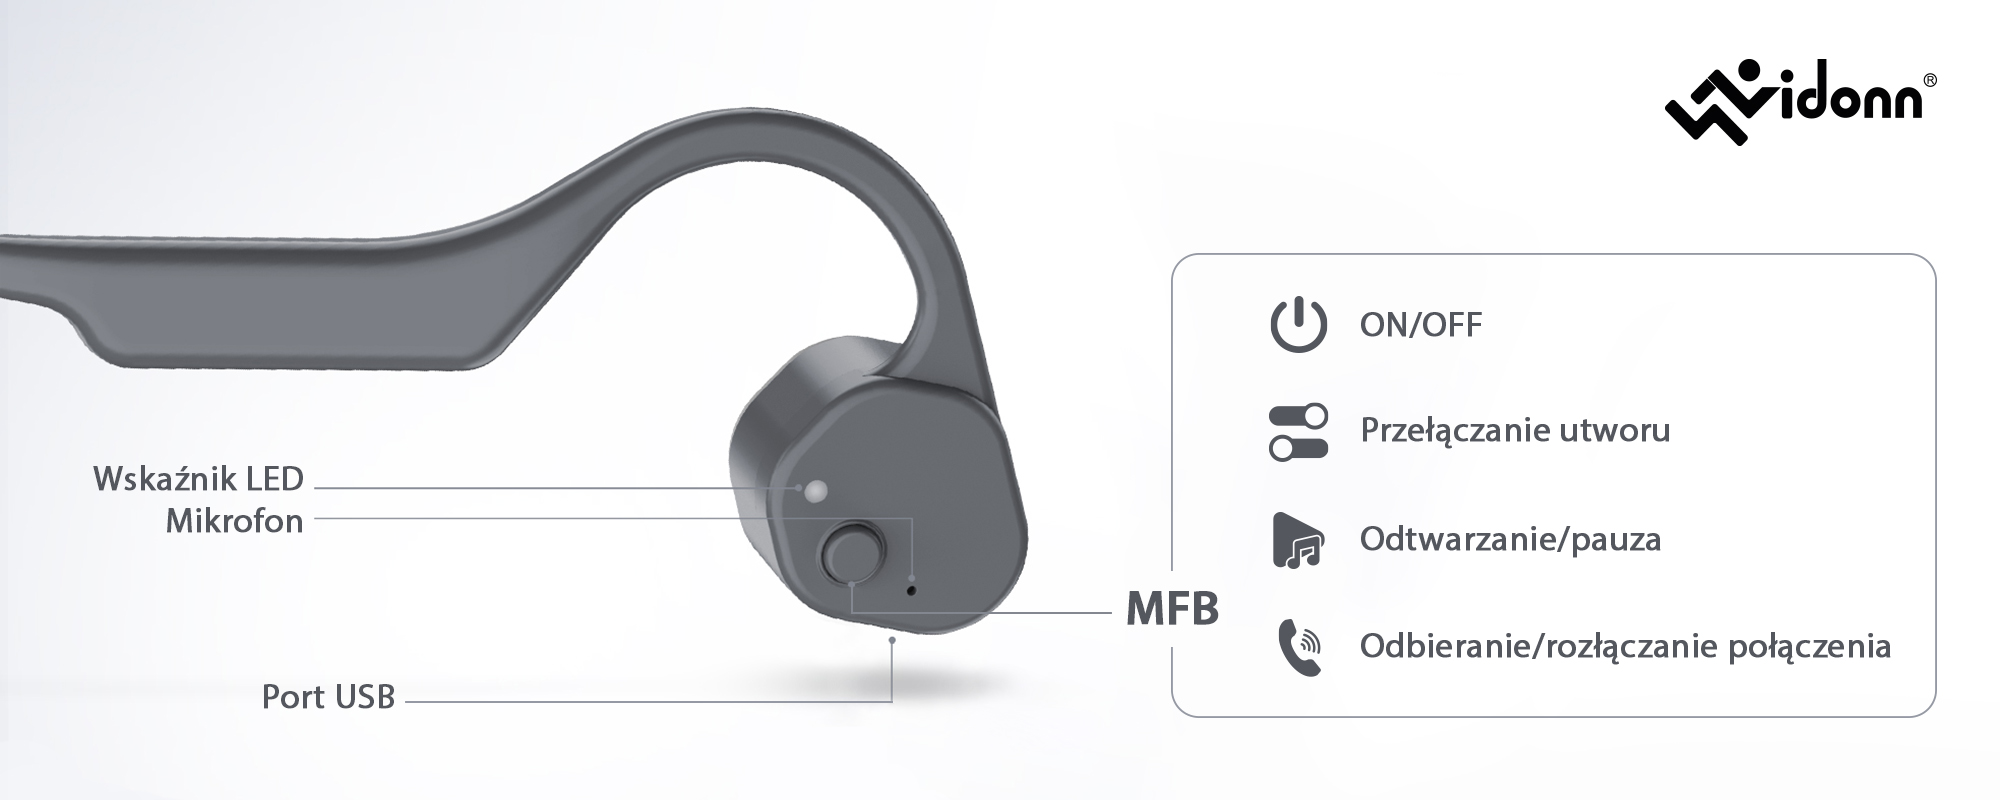 Słuchawki bezprzewodowe z technologią przewodnictwa kostnego Vidonn F3 - różowe